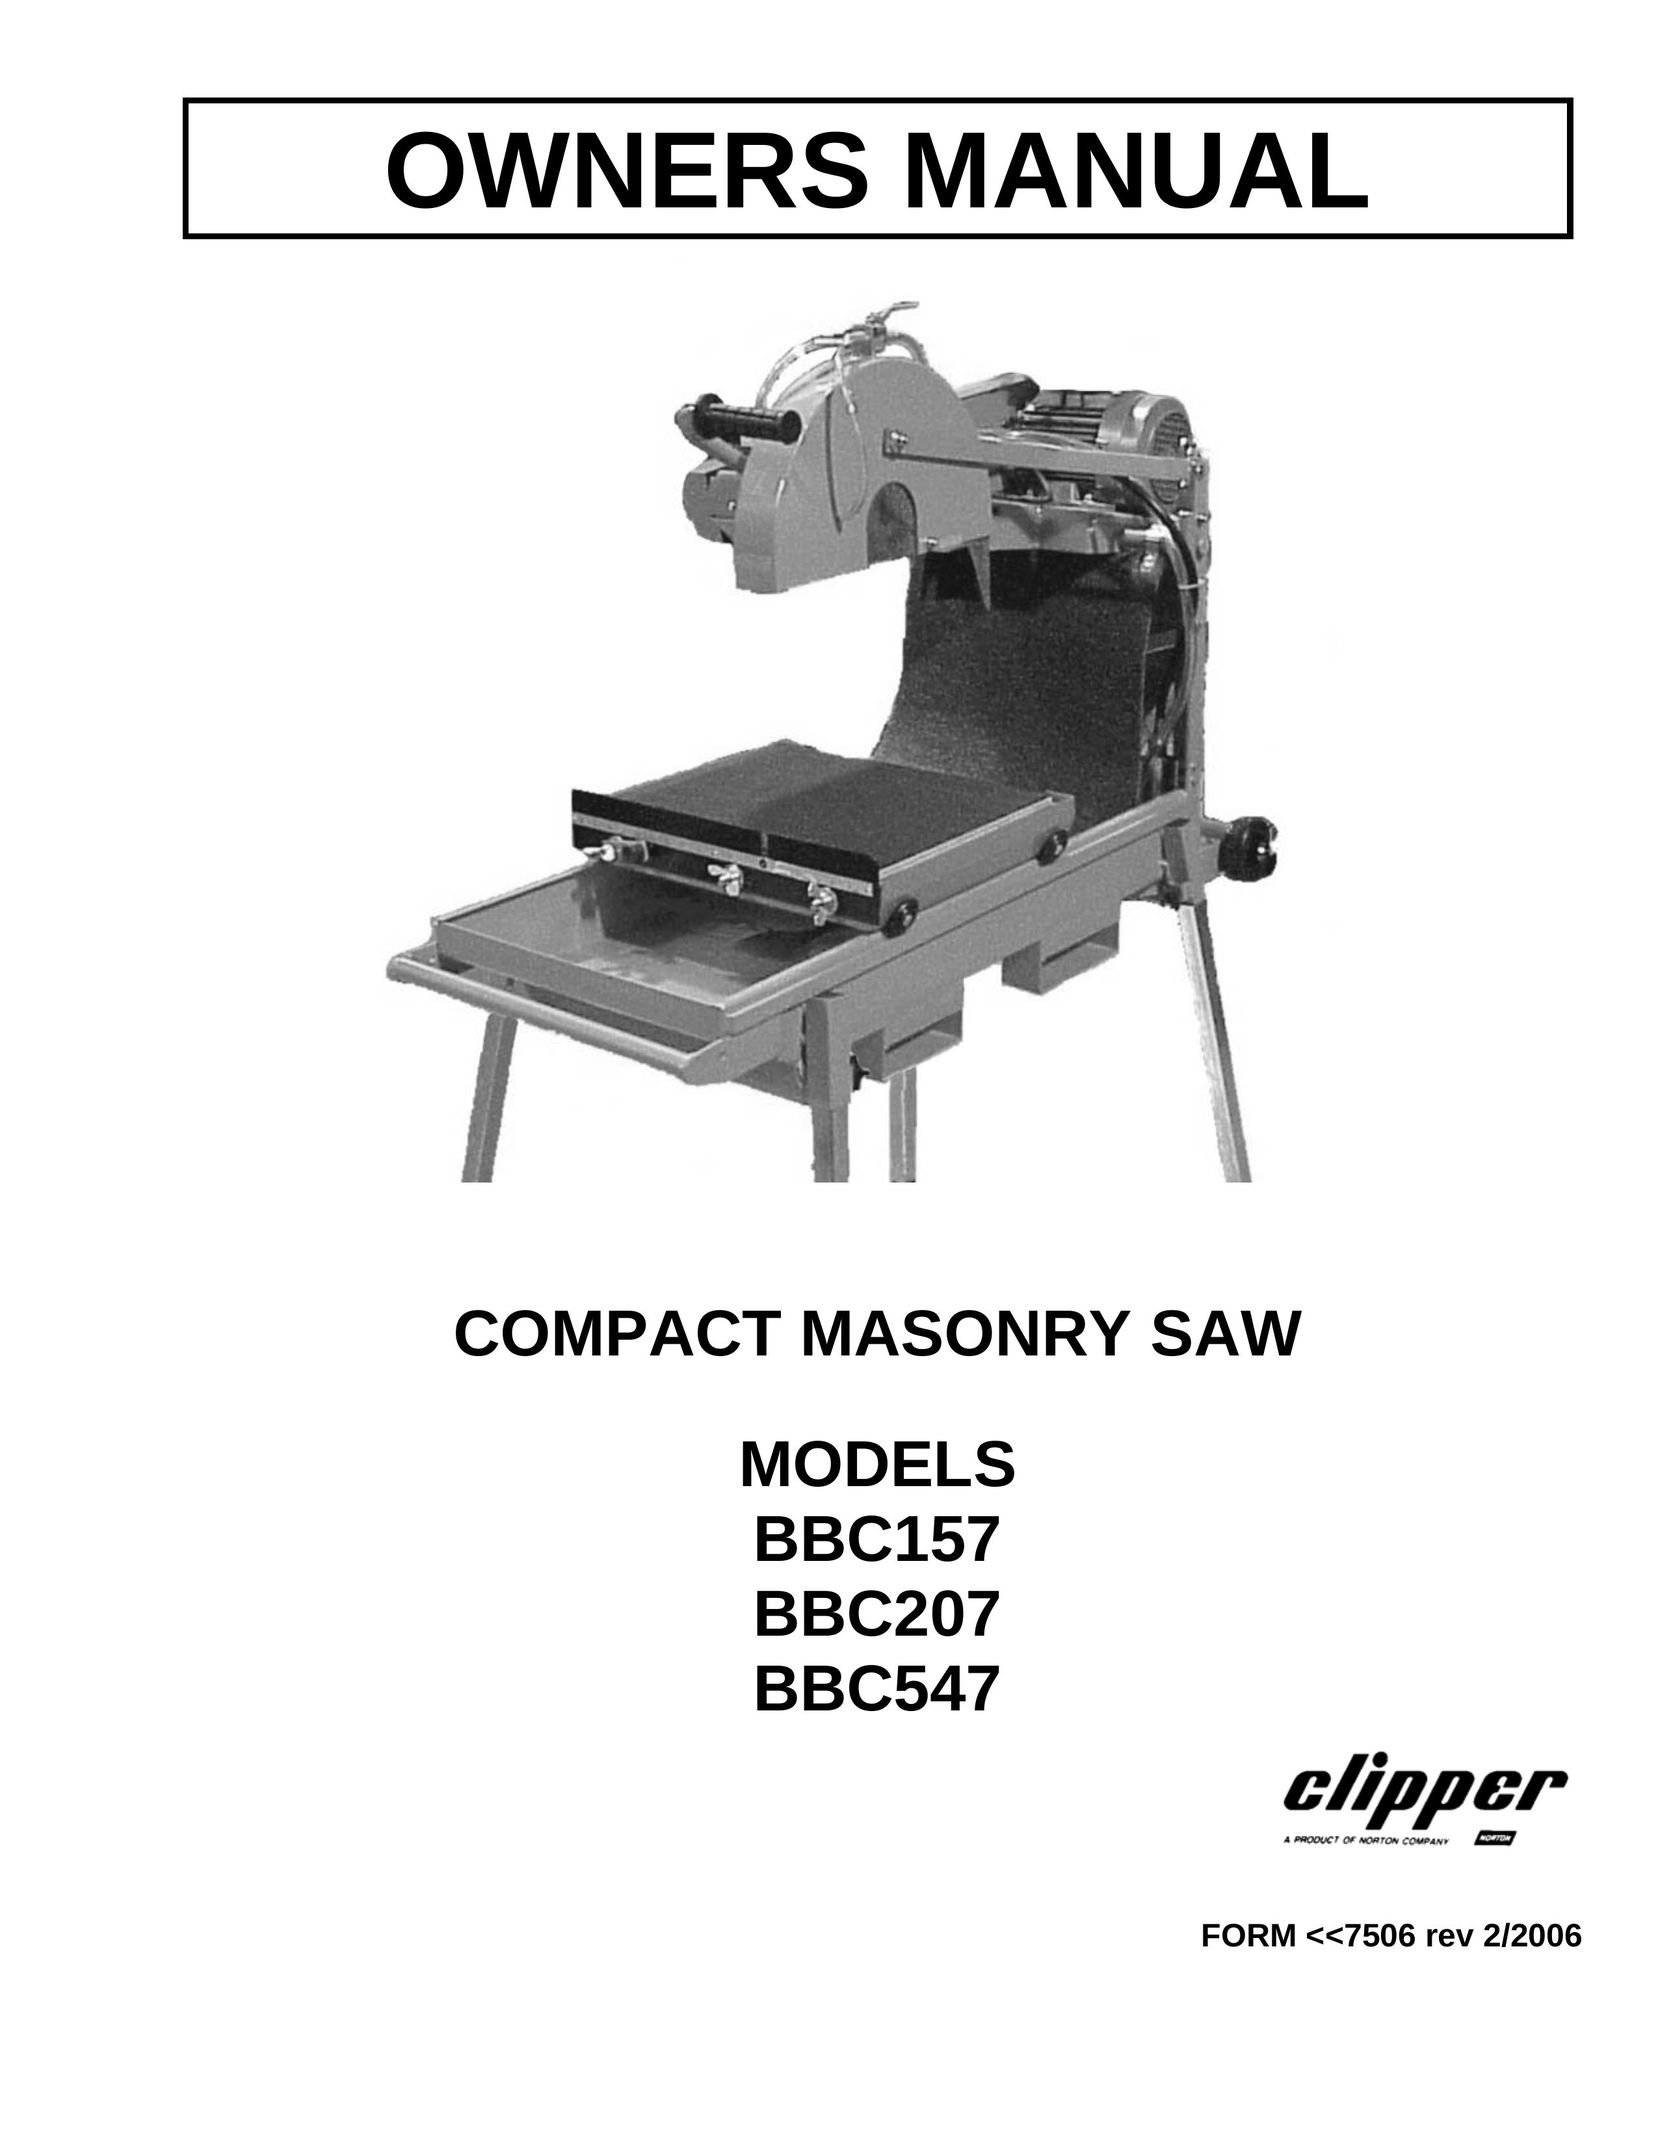 Norton Abrasives BBC207 Saw User Manual